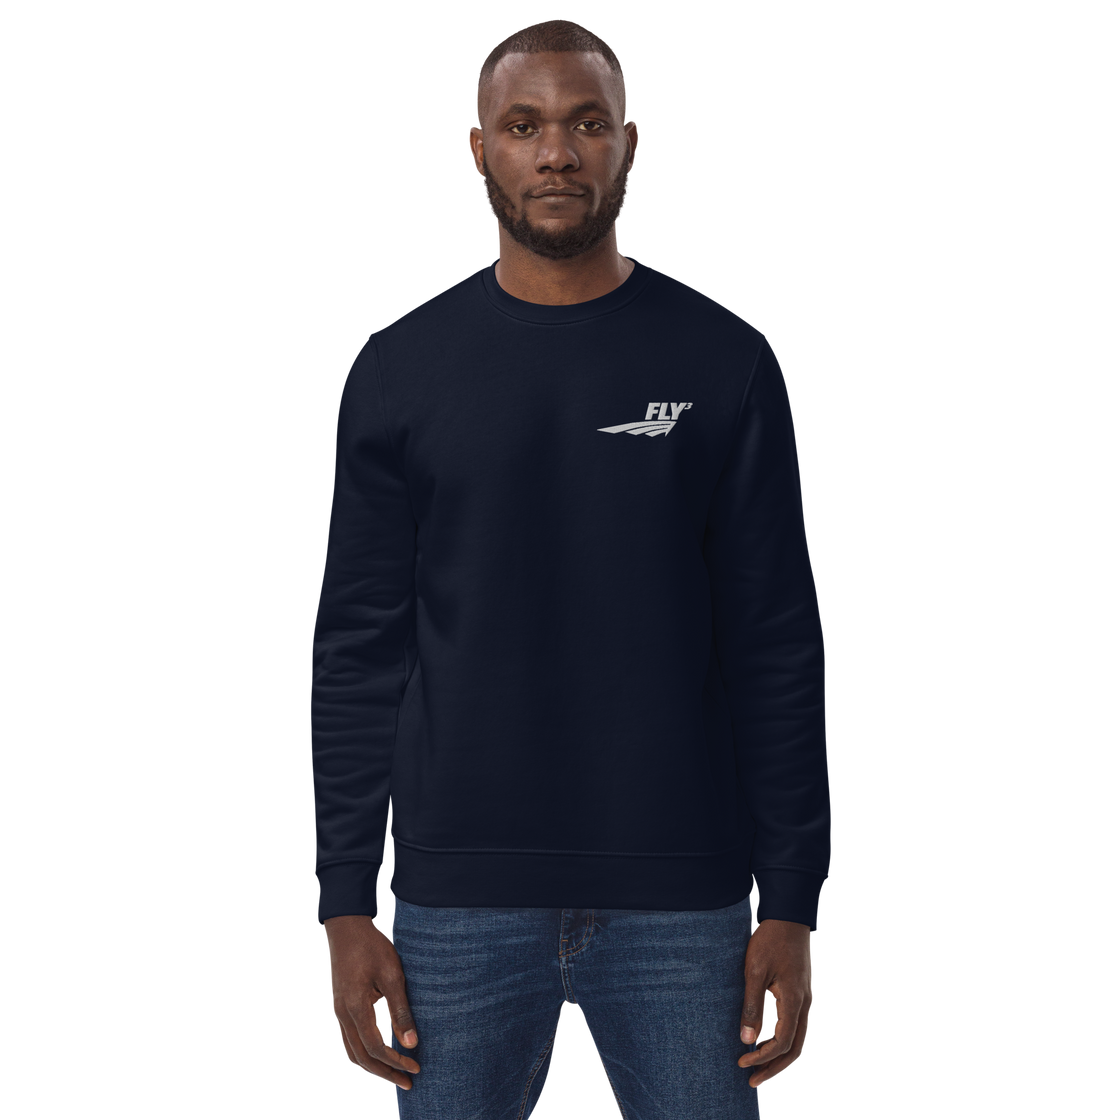 FLY³ eco sweatshirt [Flycube]